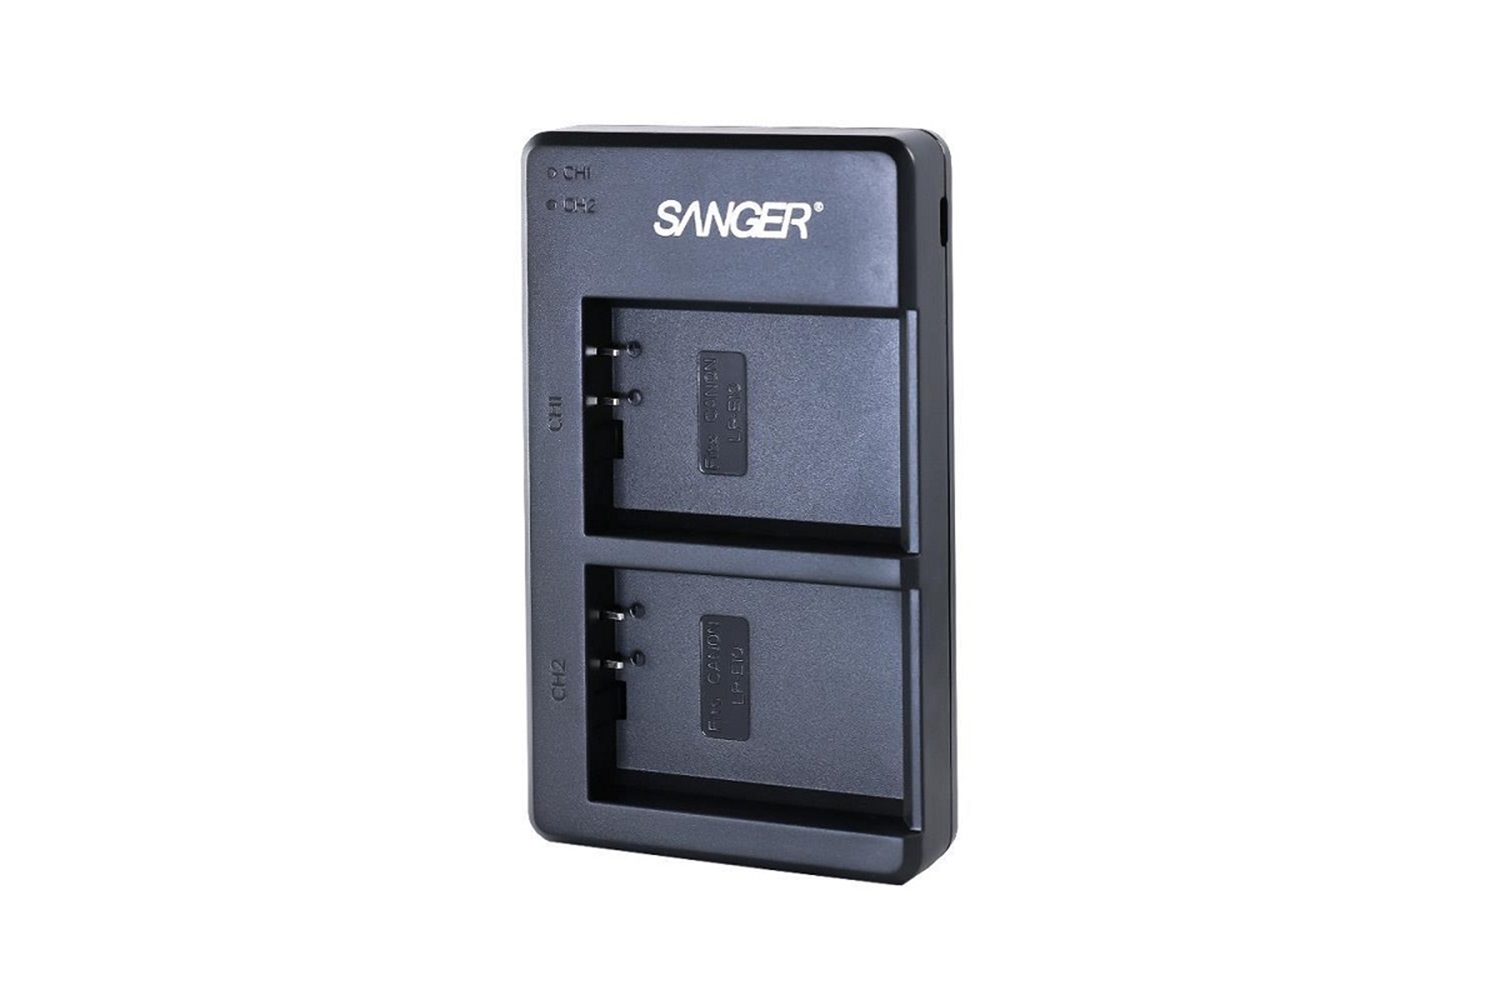 Sanger LP-E10 Canon İkili USB Şarj Aleti